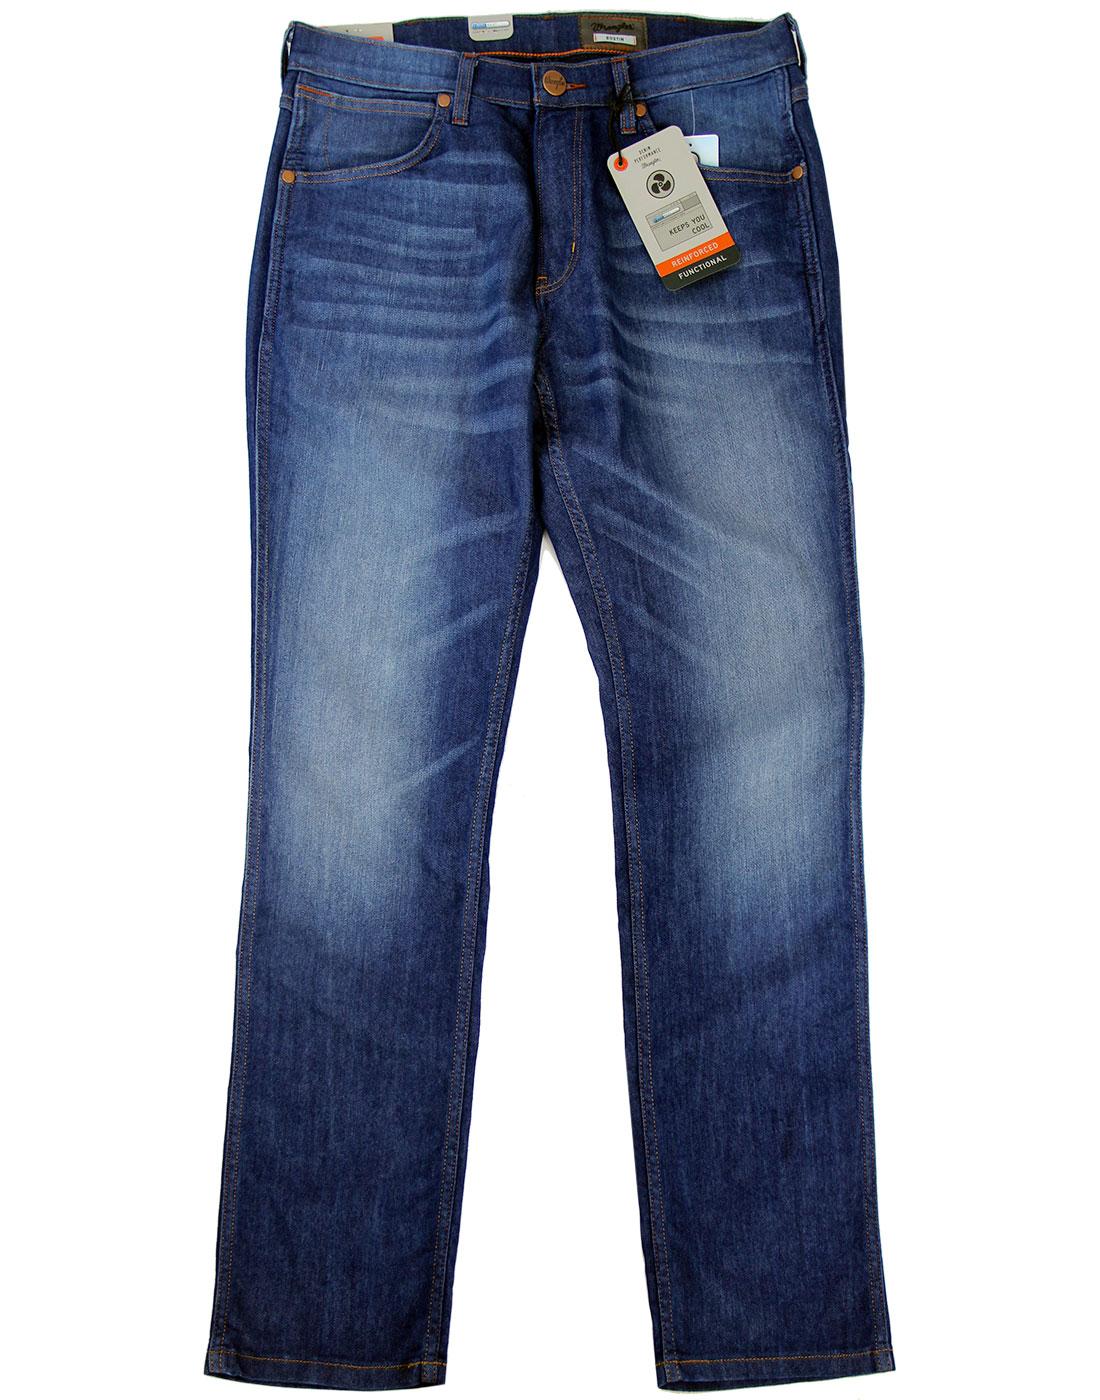 WRANGLER Bostin Retro Mod Slim Coolmax Denim Jeans Make Good